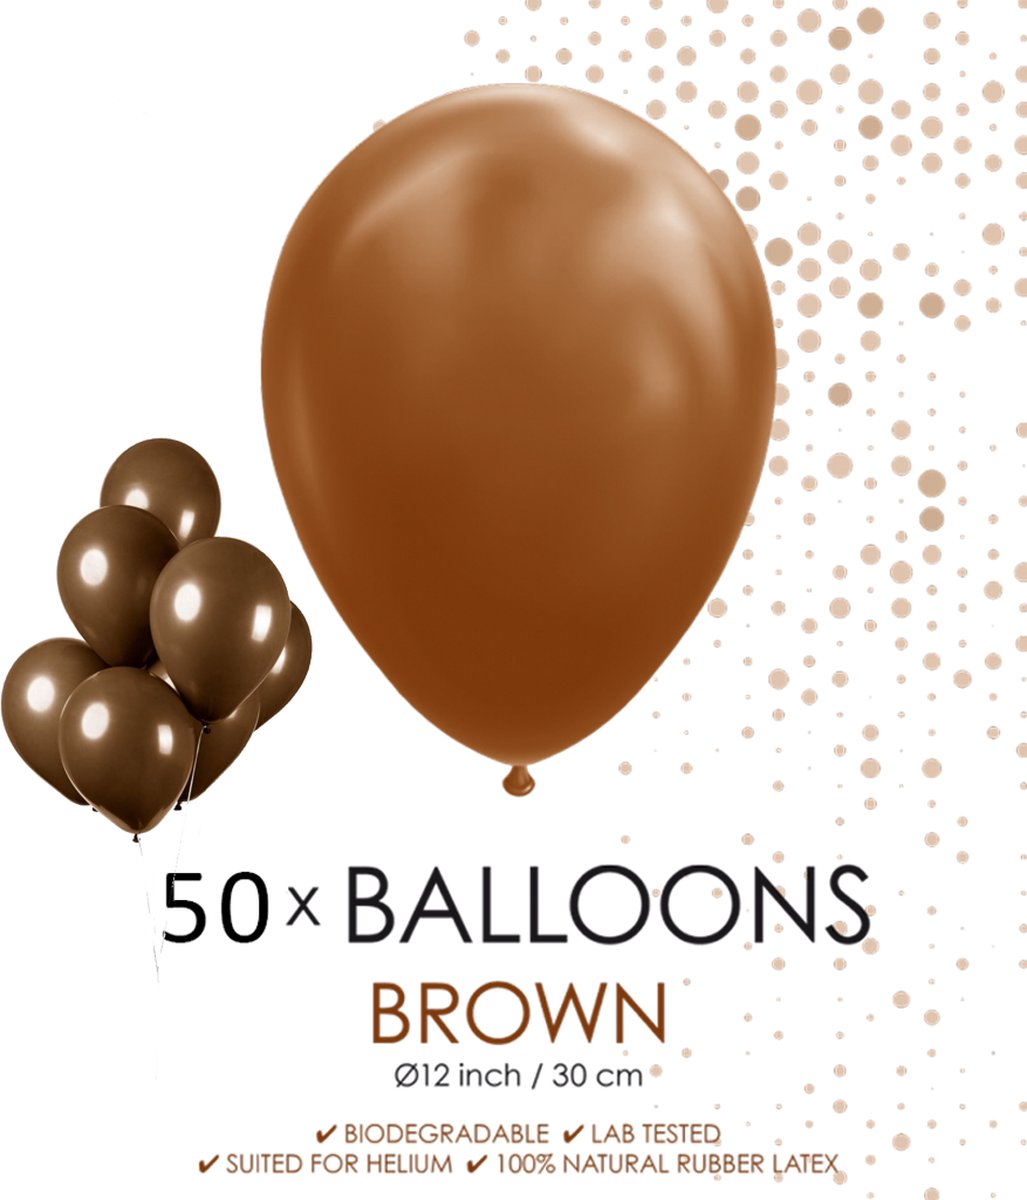 25x Ballon marron chocolat 30cm - Festival party fête anniversaire